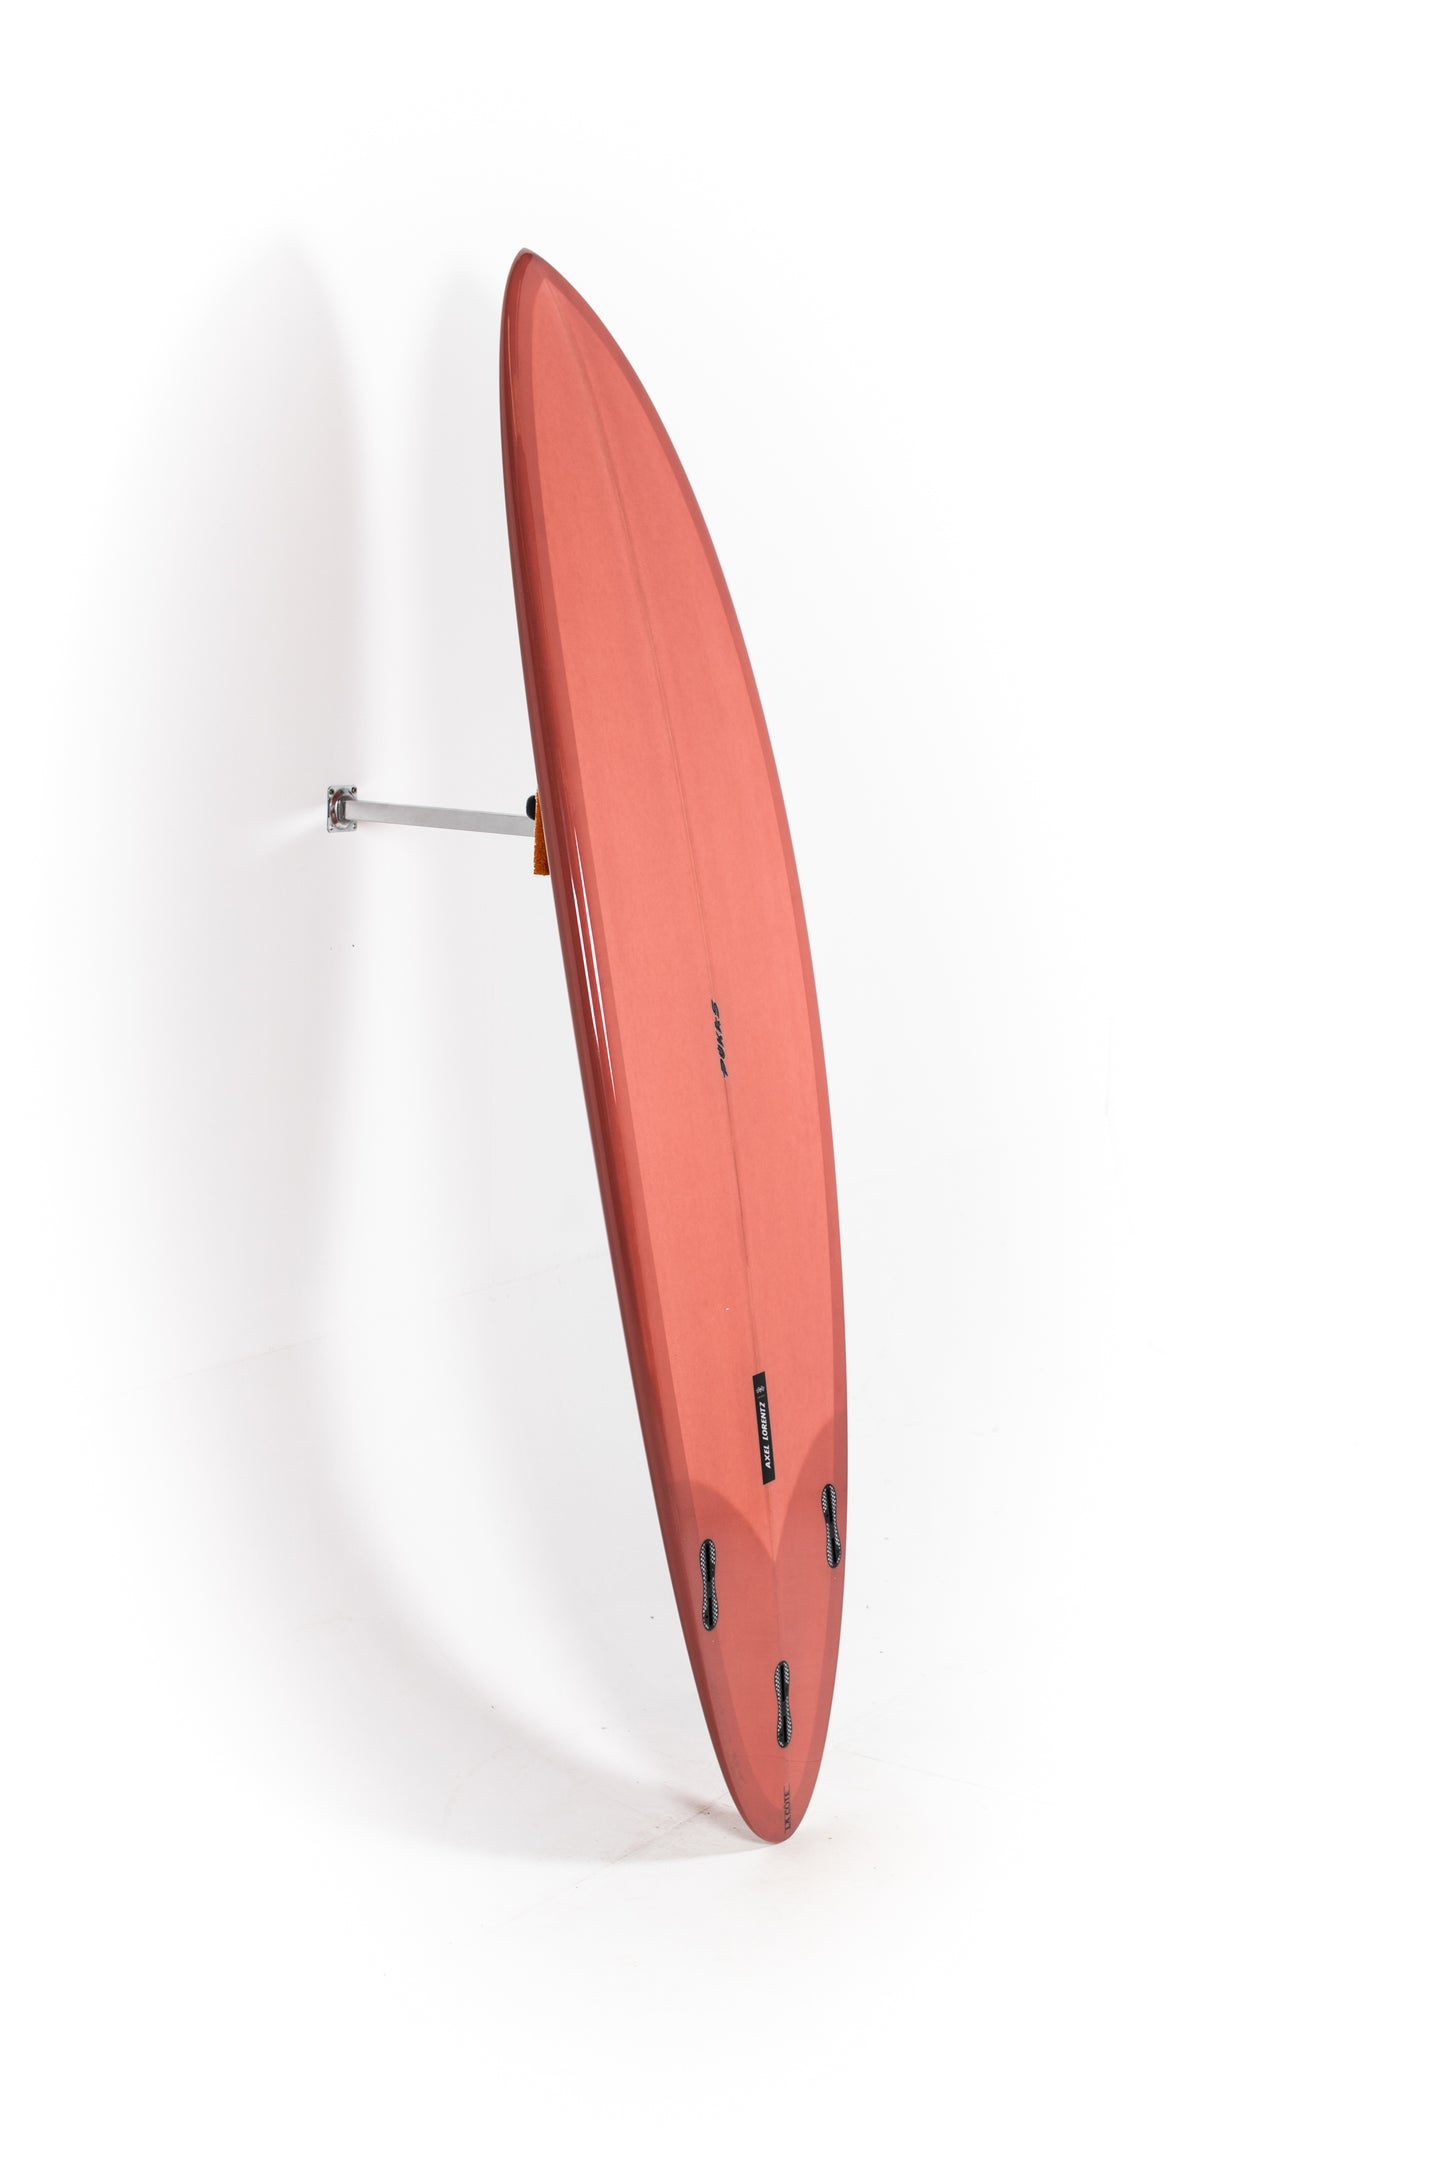 
                  
                    Pukas Surf Shop - Pukas Surfboard - LA CÔTE by Axel Lorentz - 6´7" x 21,18 x 2,84 - 43,15L -  AX09627
                  
                